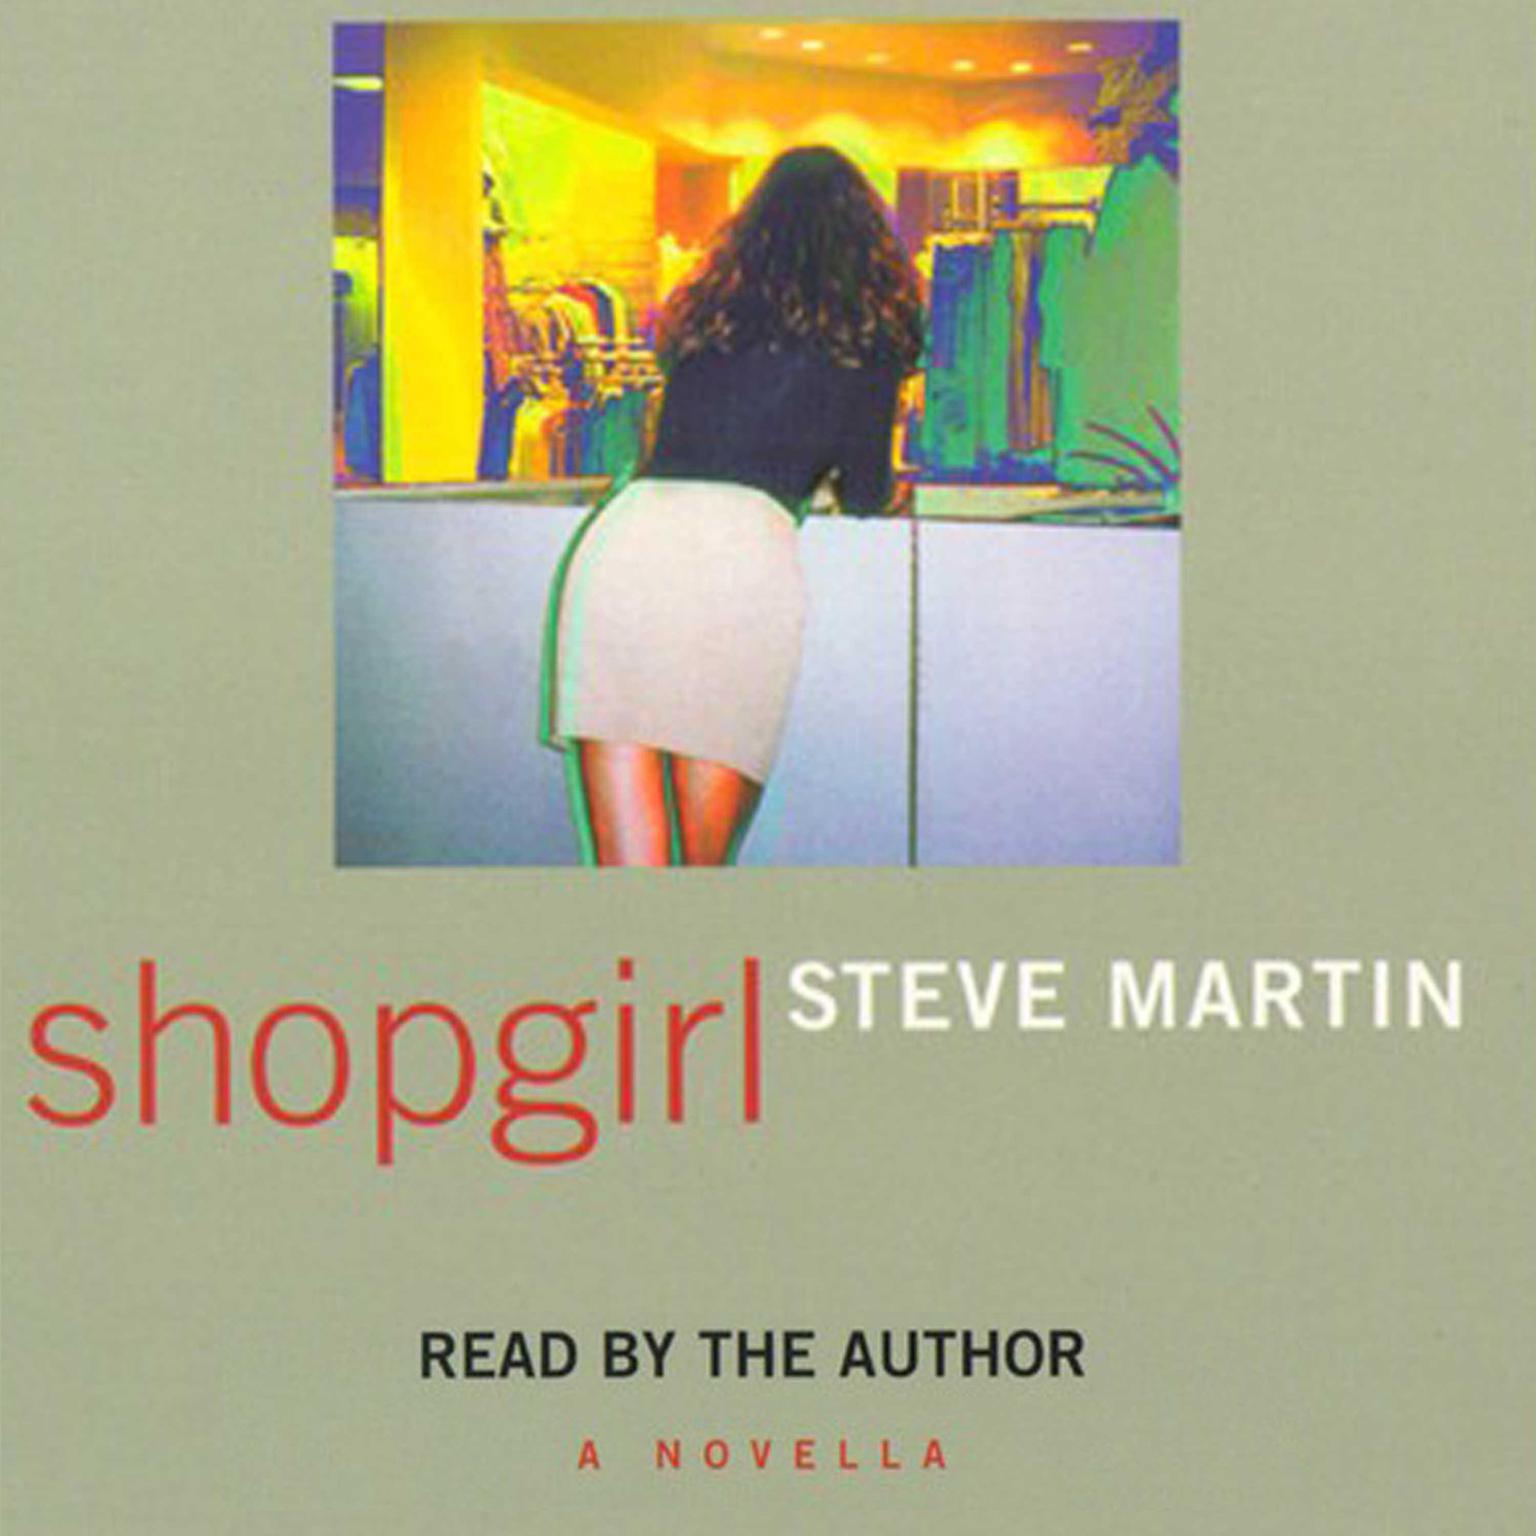 "Shopgirl" by Steve Martin